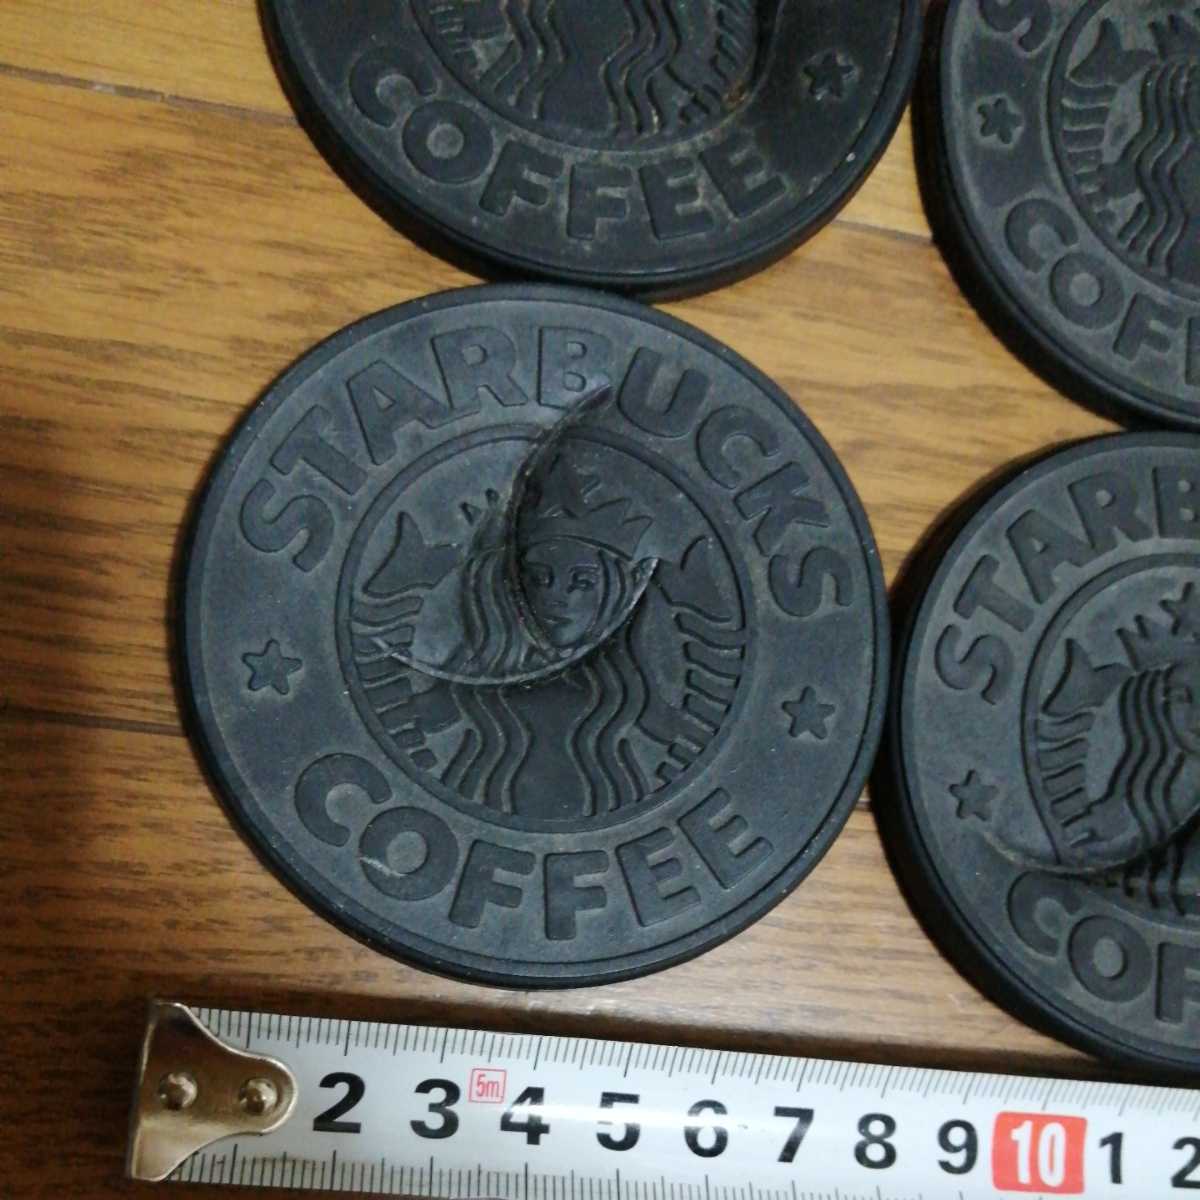  Starbucks Coaster резина Canada производства 4 шт Junk 